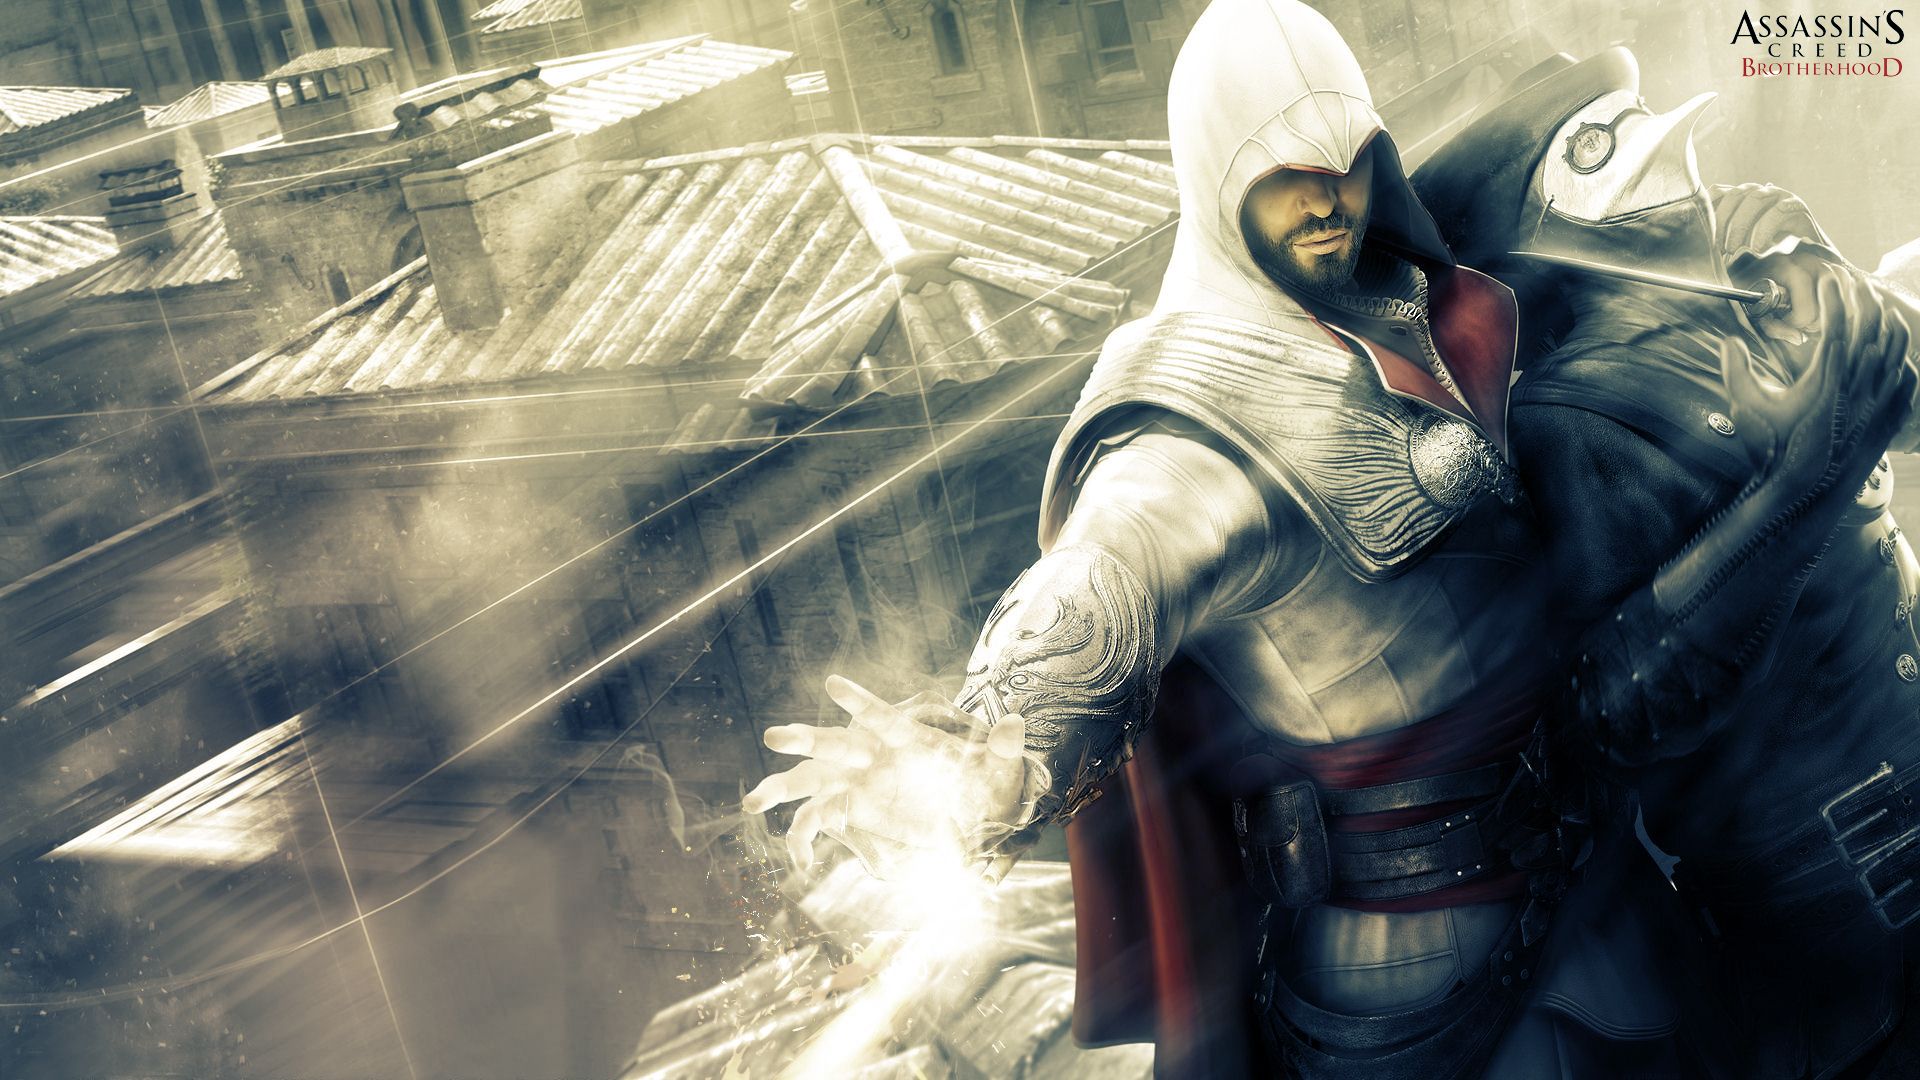 Tags Assassins Creed Pics Brotherhood Wallpaper